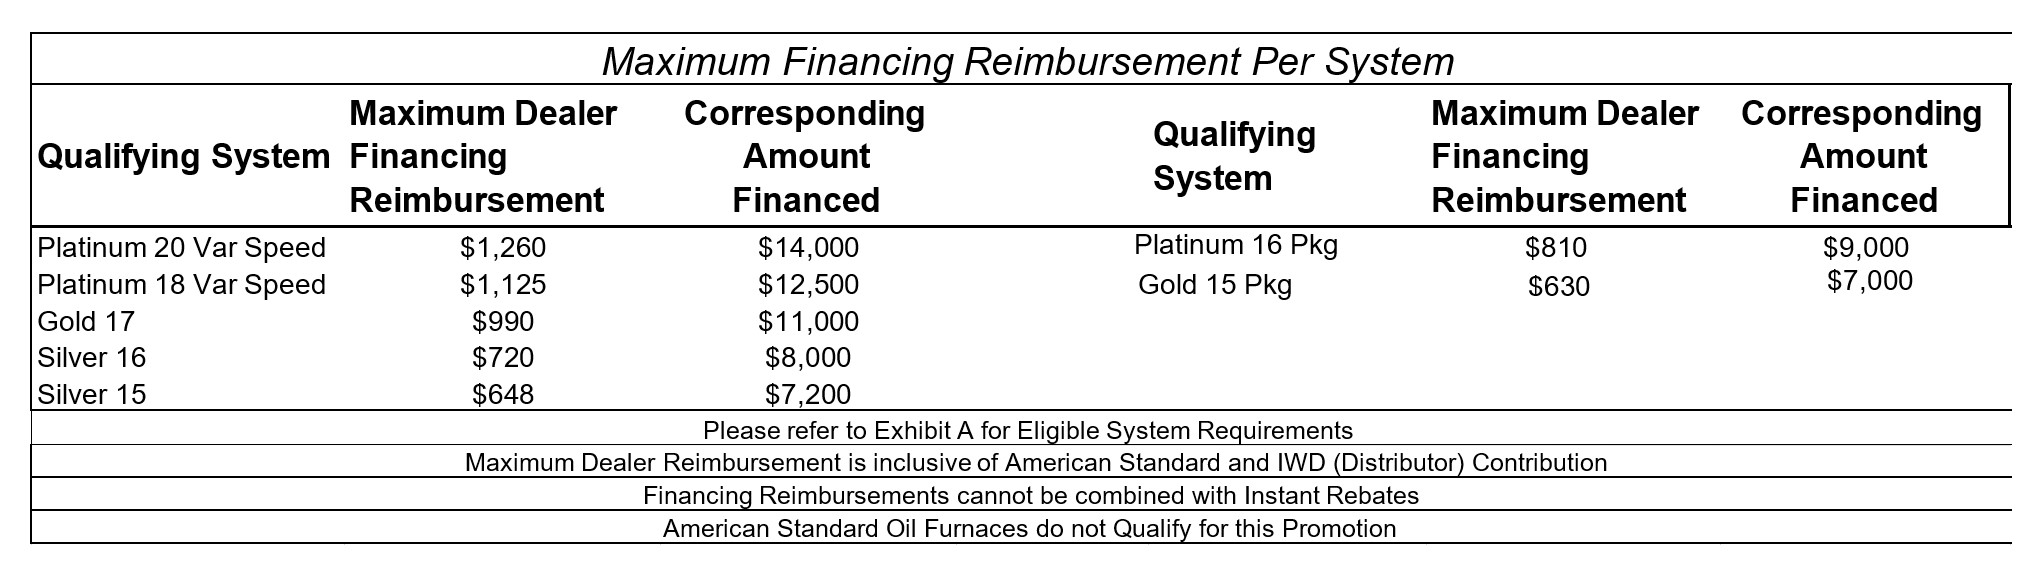 Max financing reimbursement